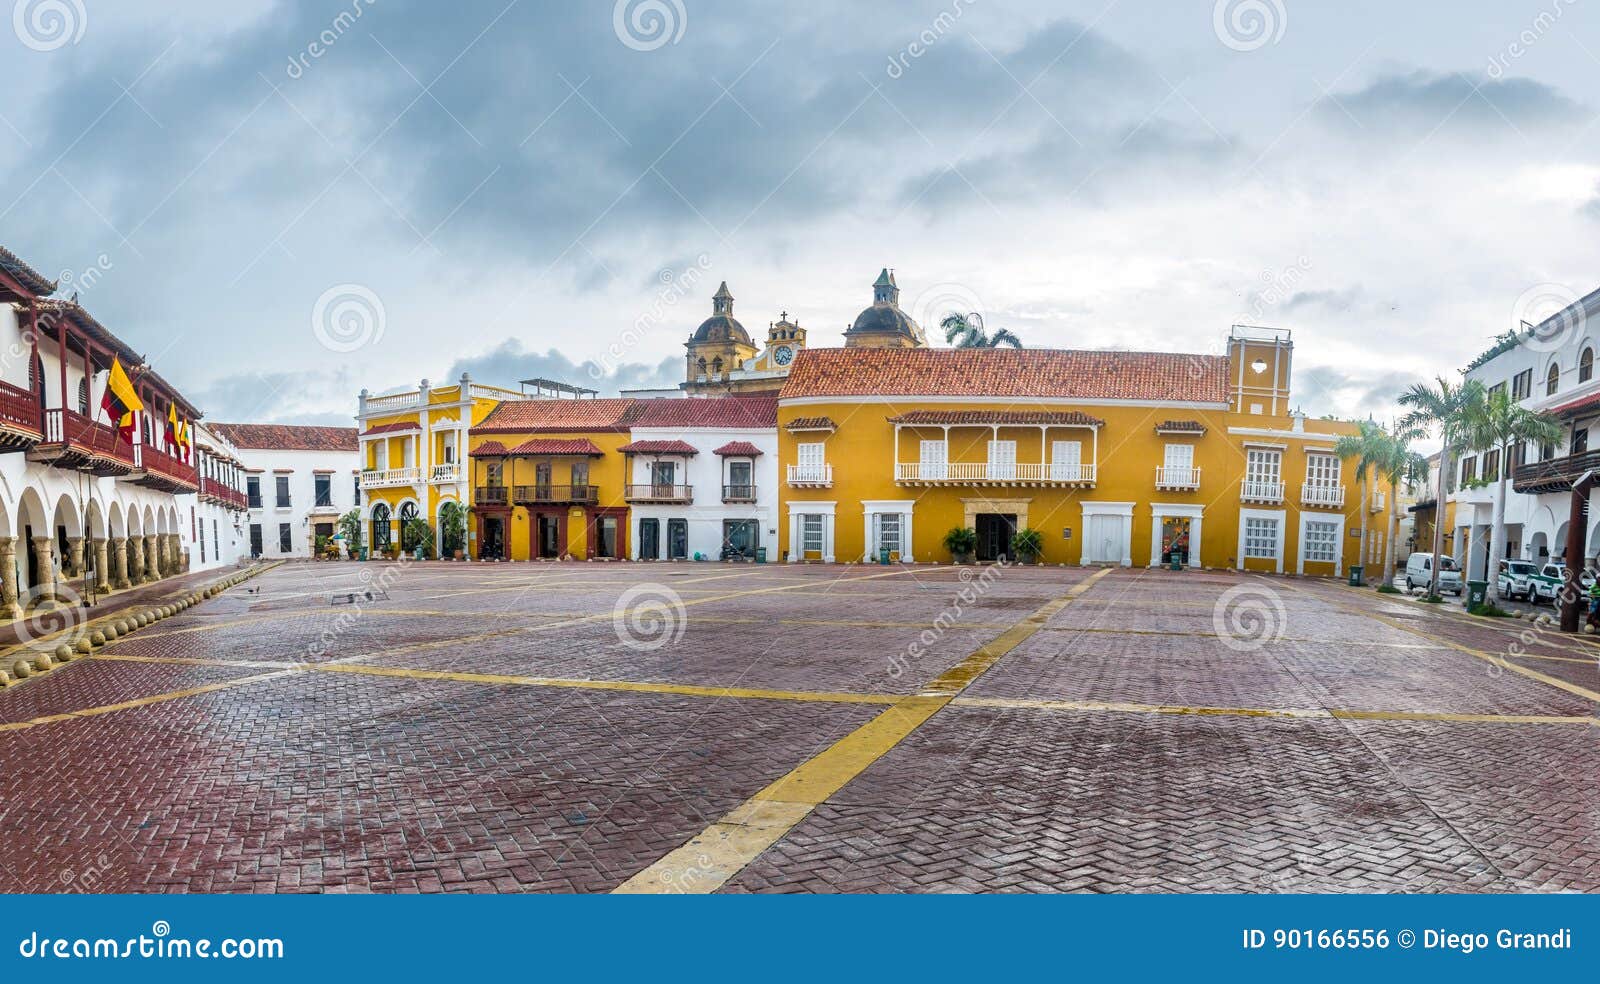 plaza de la aduana - cartagena de indias, colombia